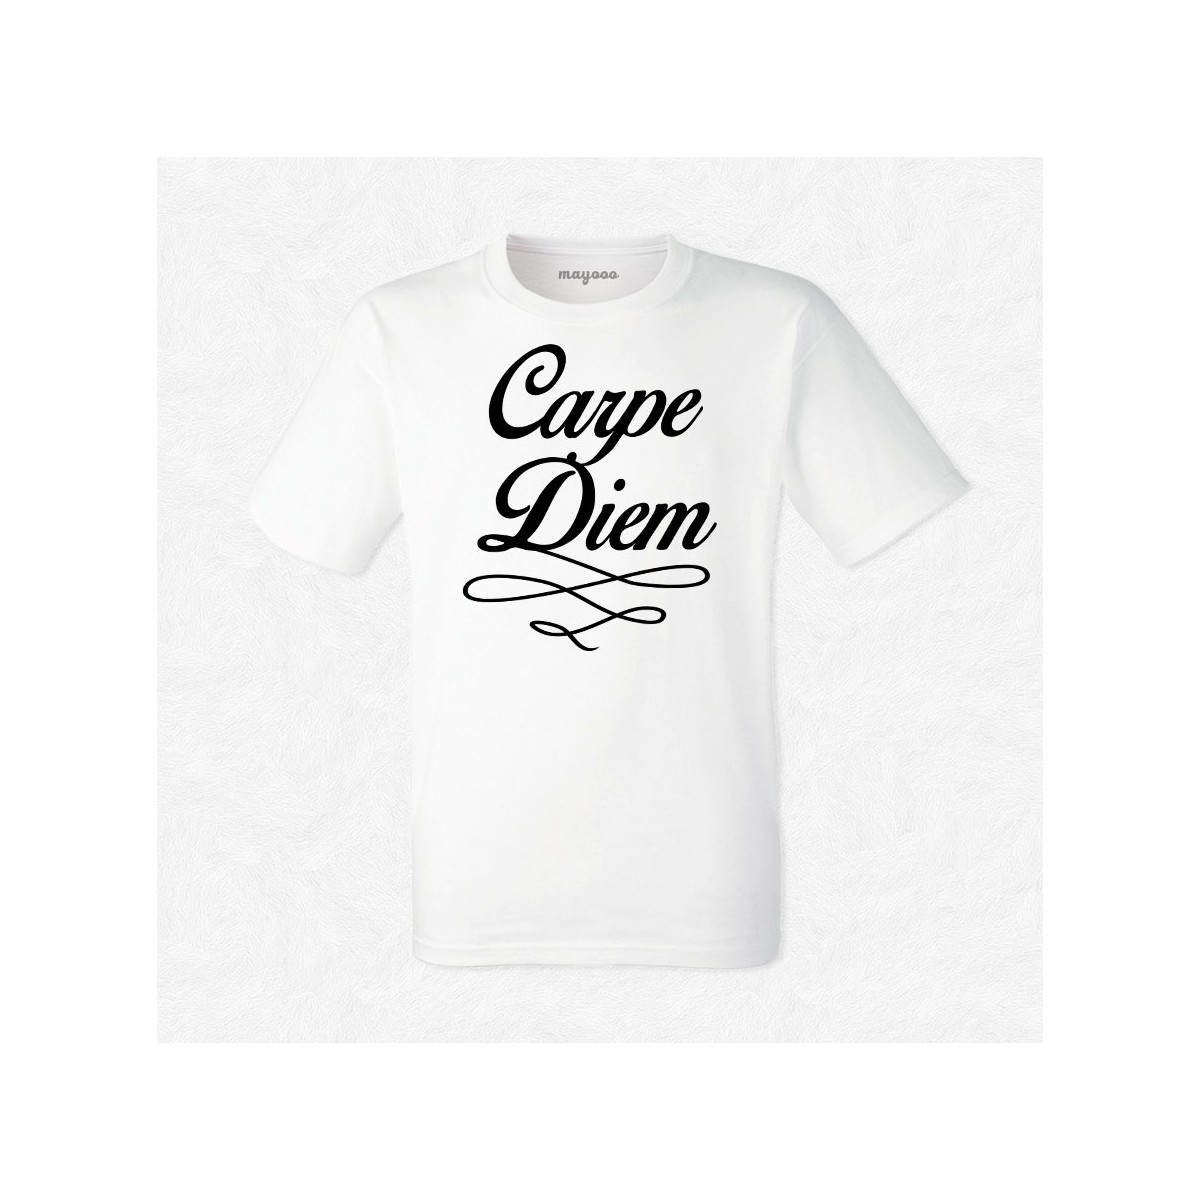 T-shirt Carpe diem